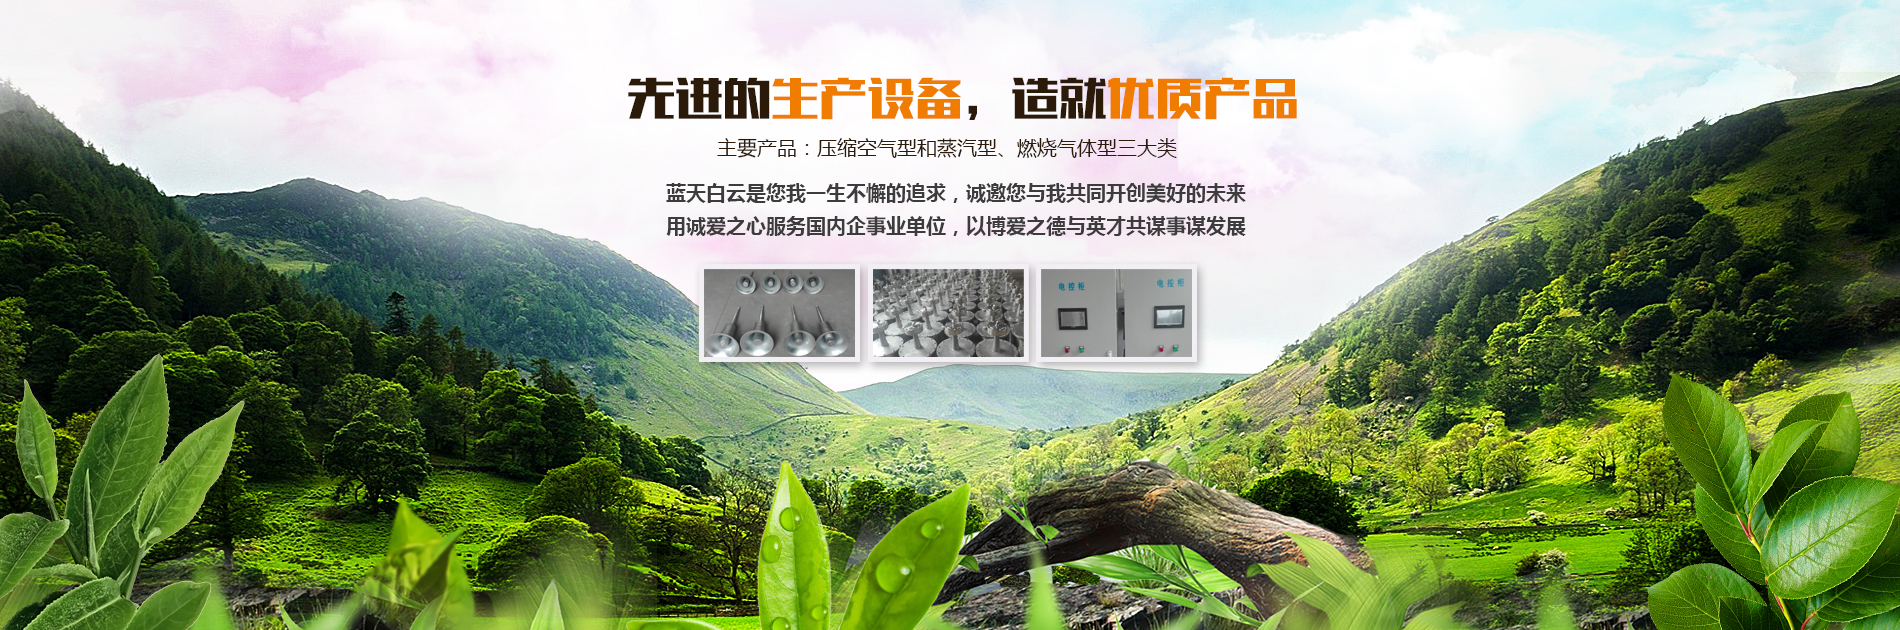 吹灰器-激波吹灰器-洛阳卓杰环保科技有限公司